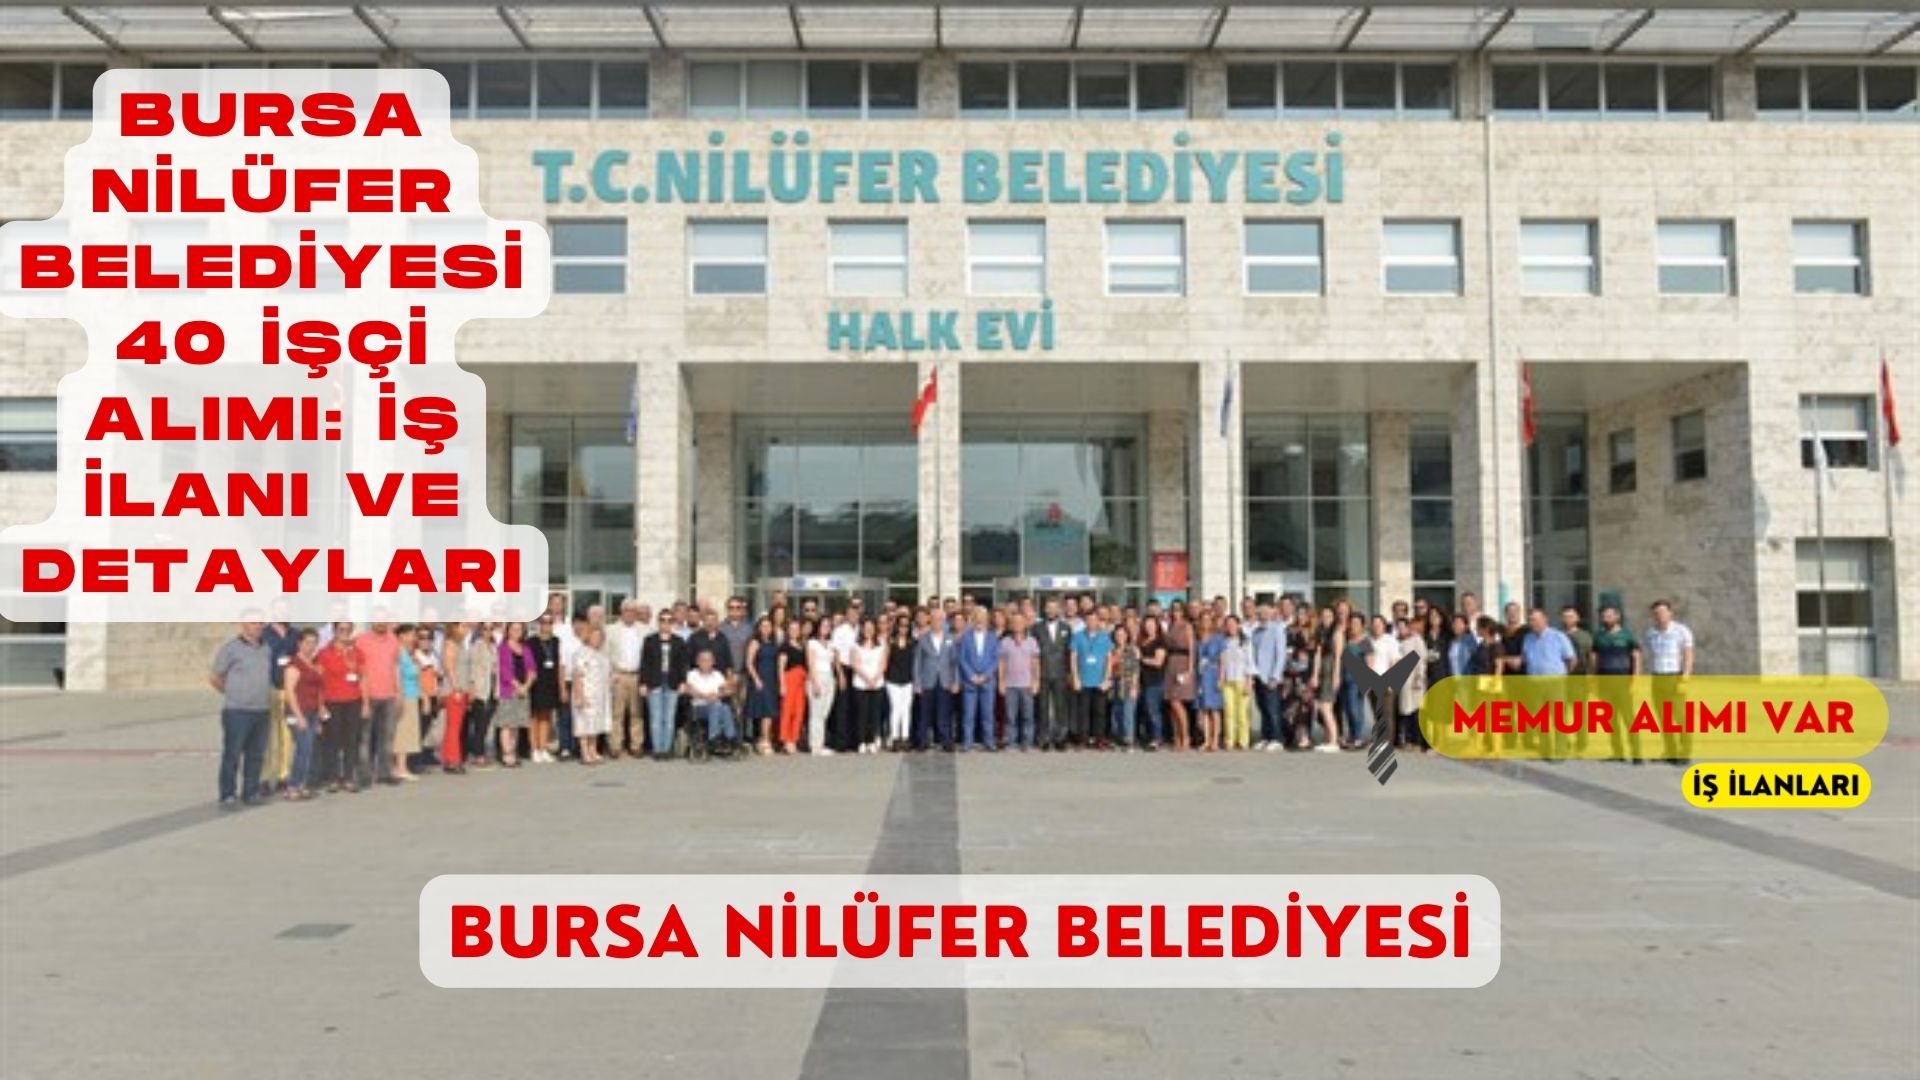 Bursa Nilüfer Belediyesi 40 İşçi Alımı: İş İlanı ve Detayları